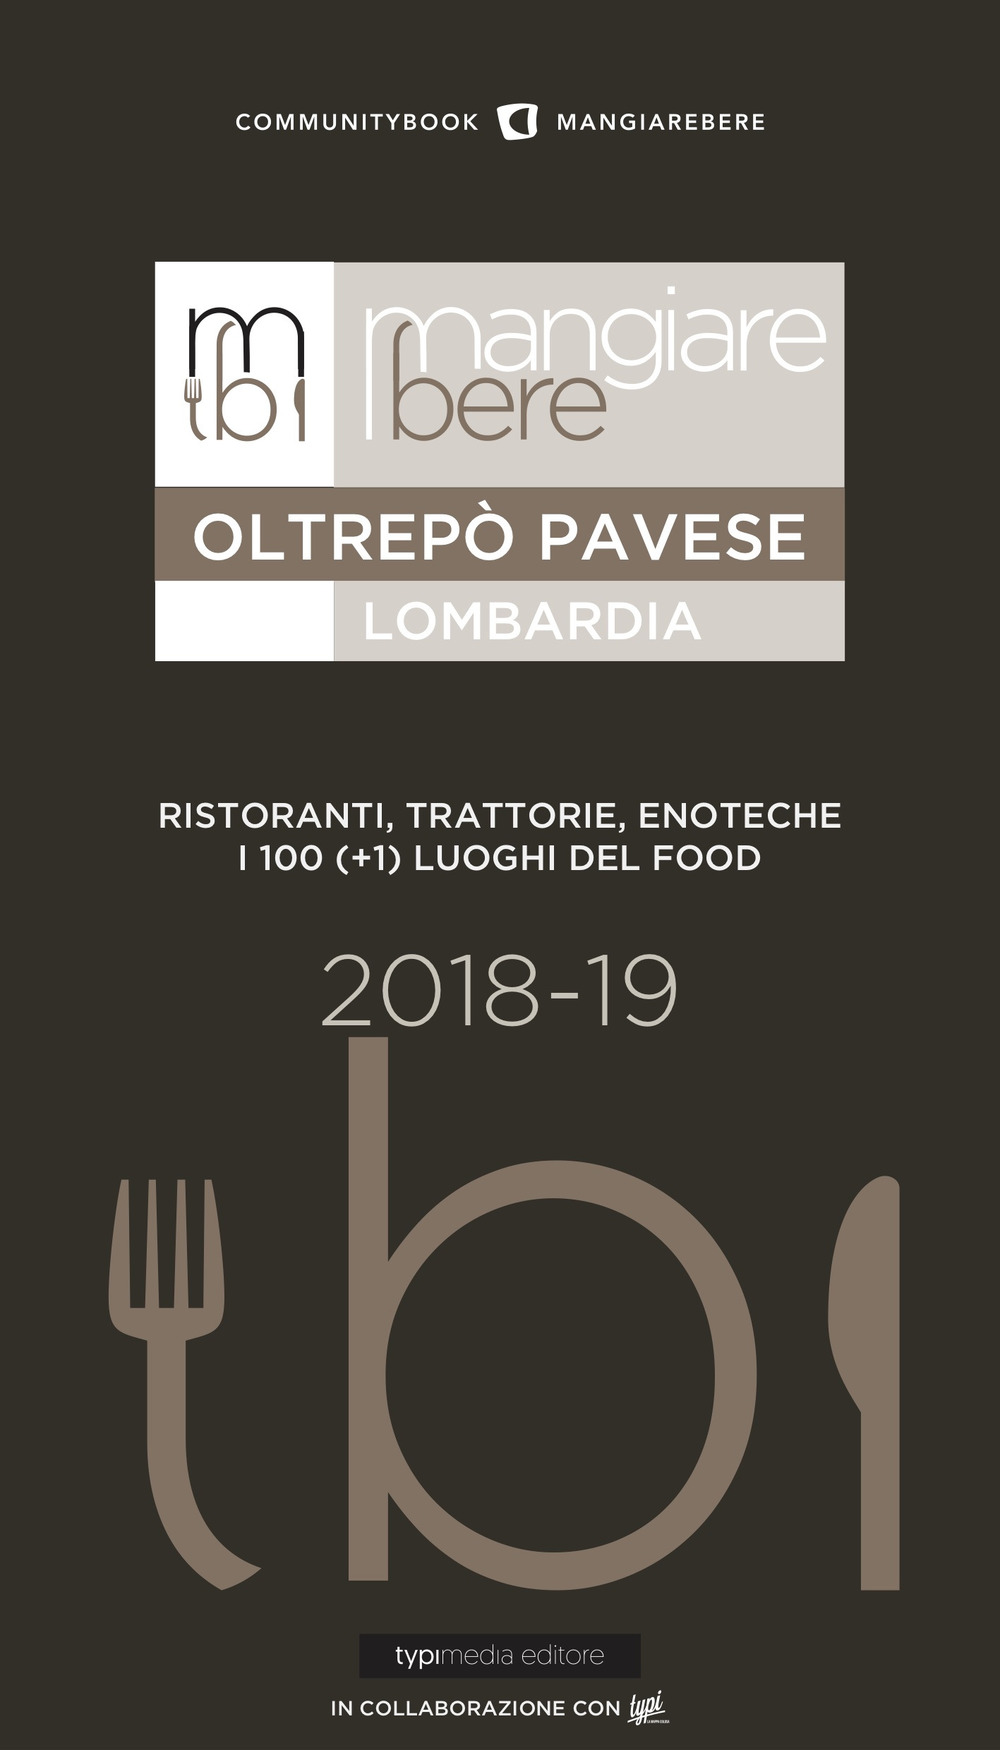 MangiareBere Oltrepò Pavese (Lombardia). Ristoranti, trattorie, enoteche. I 100 (+1) luoghi del food 2018-19